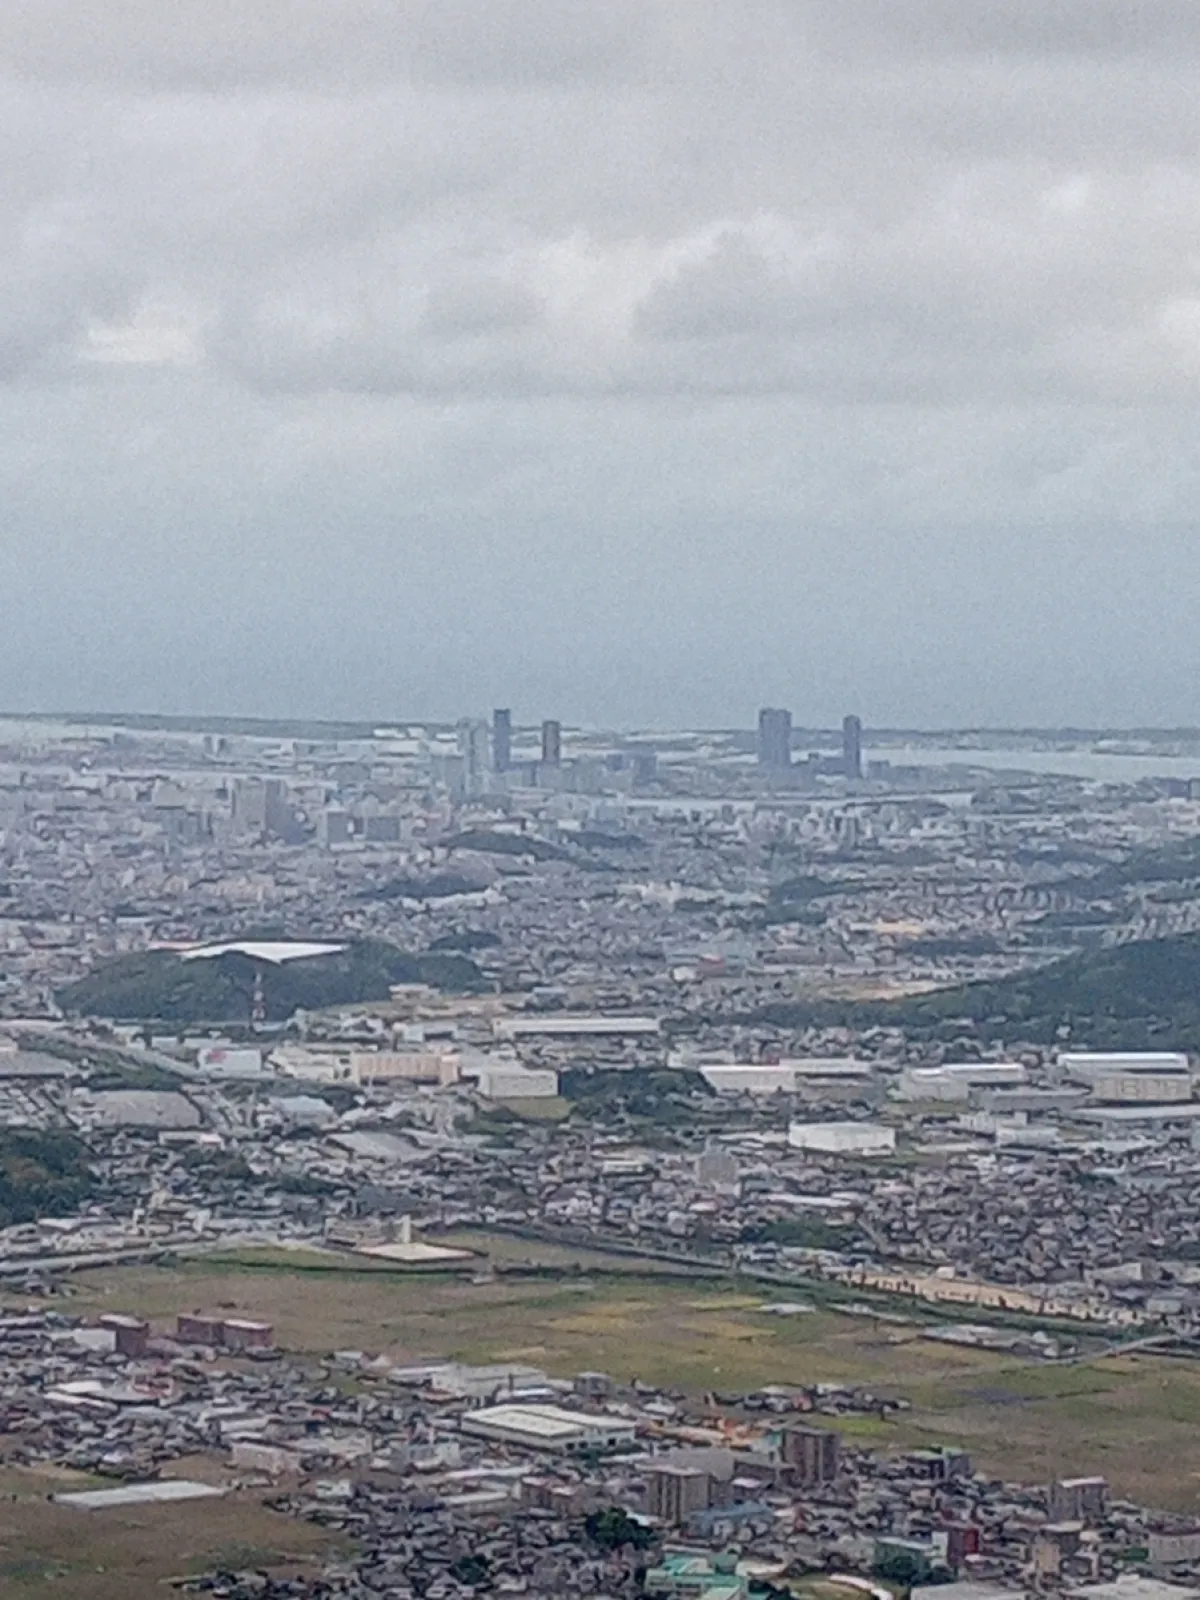 福岡ソフトバンクホークスのホームのみずほペイペイドームが遠くに見えました。
今日は曇り空で風が冷たかったです。